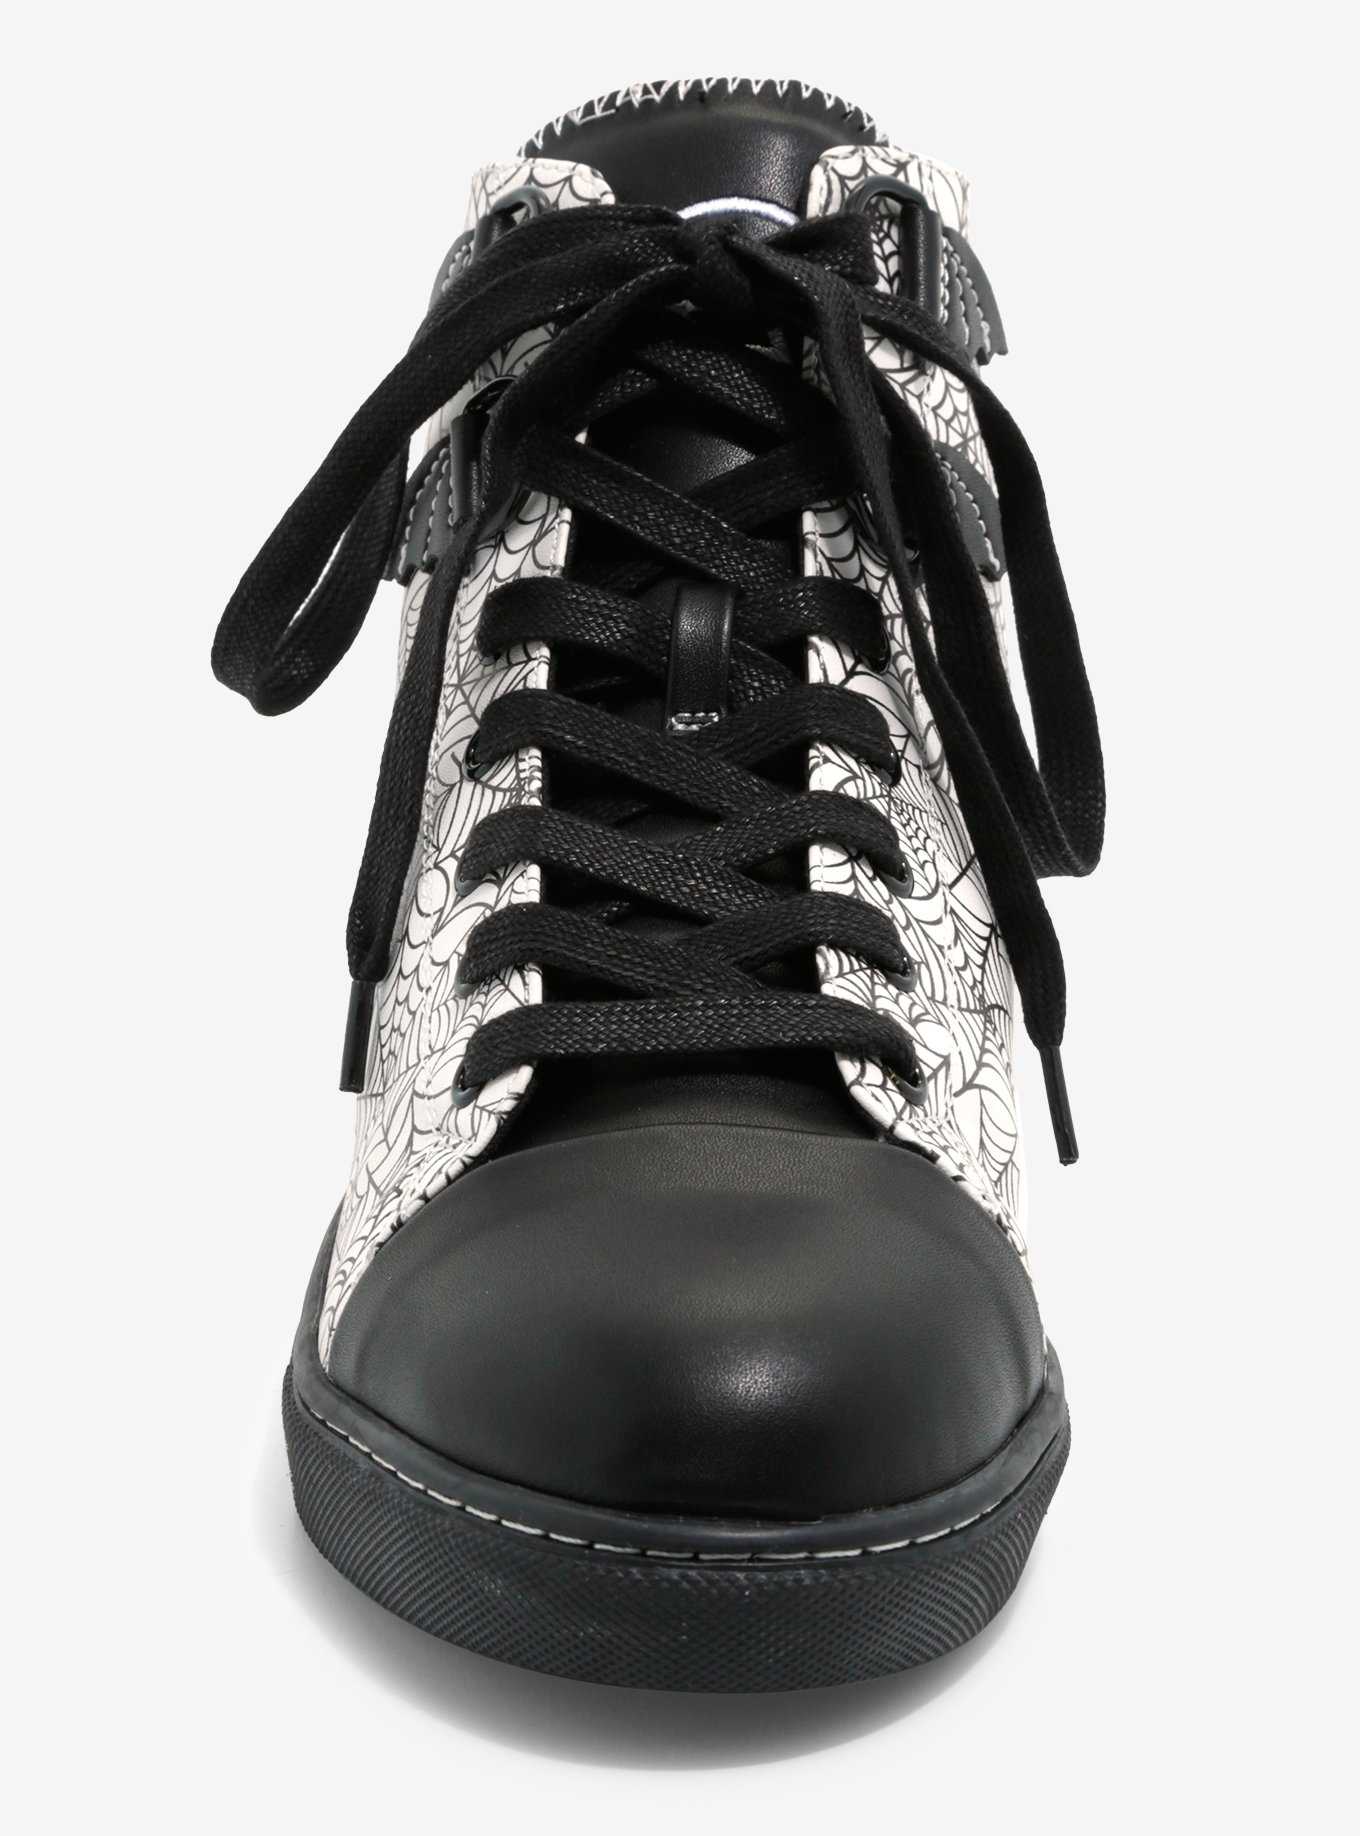 Strange Cvlt Black & White Krypt Web Hi-Top Sneaker, , hi-res